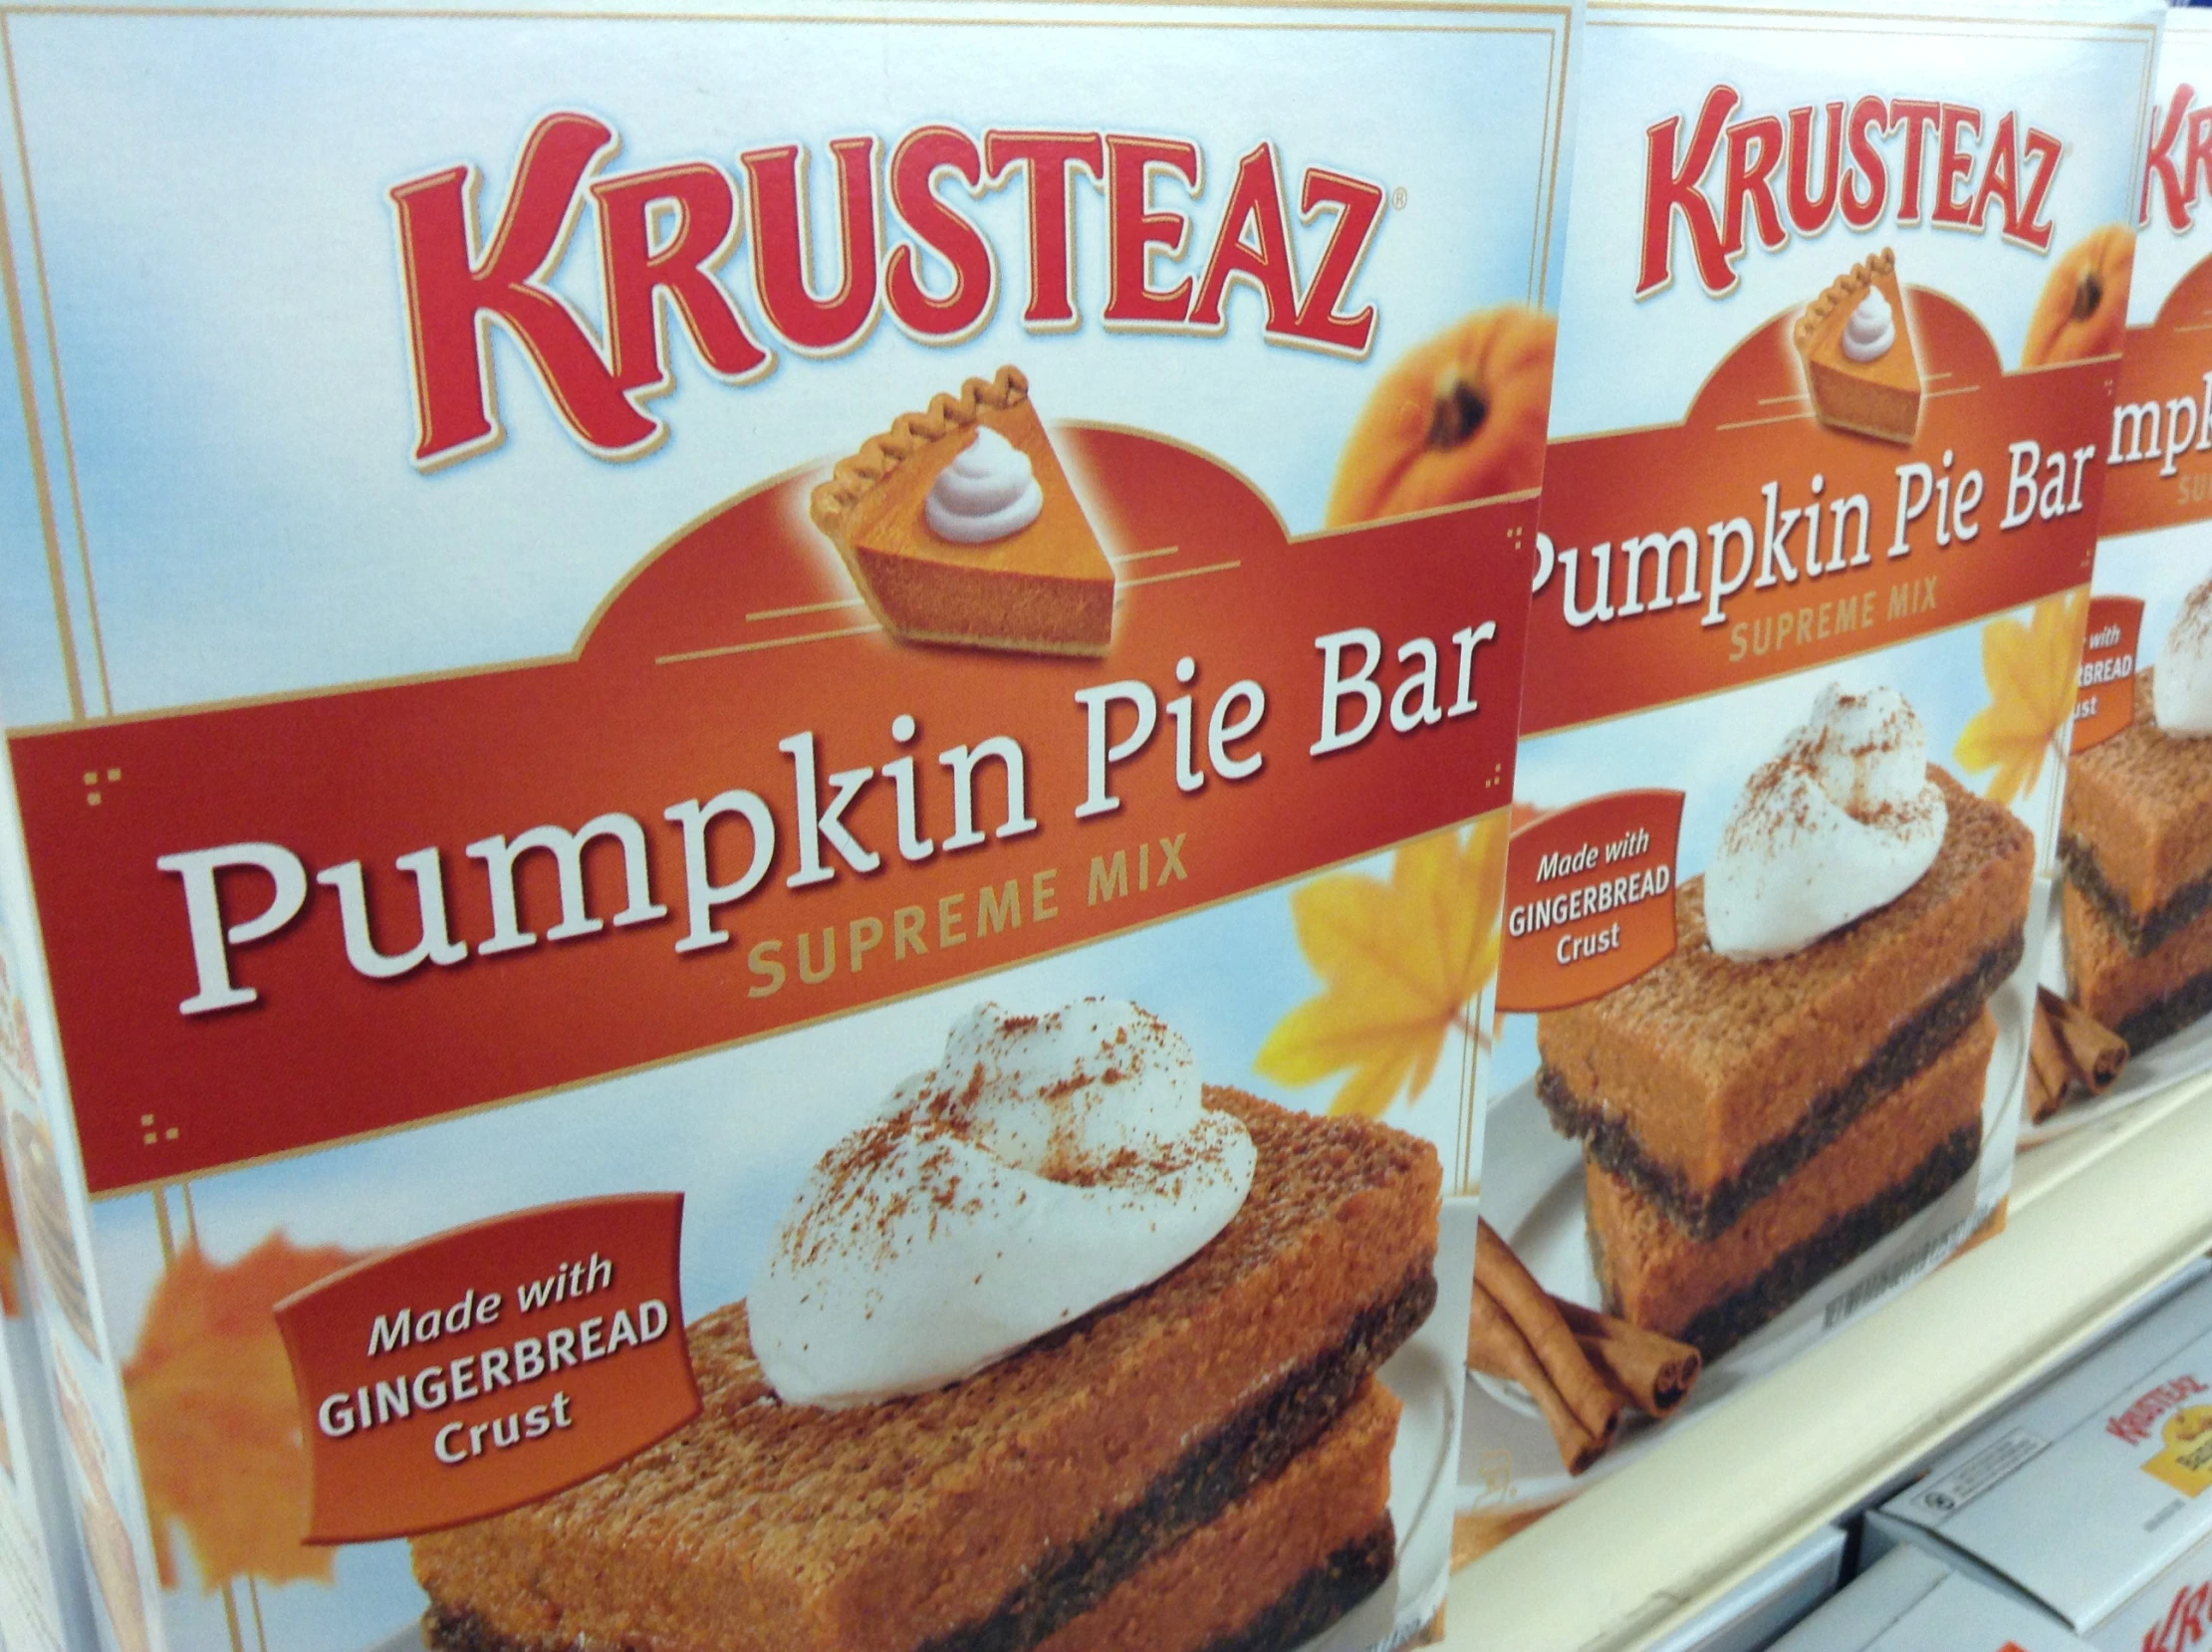 a package of krispy kreme pumpkin pie treats